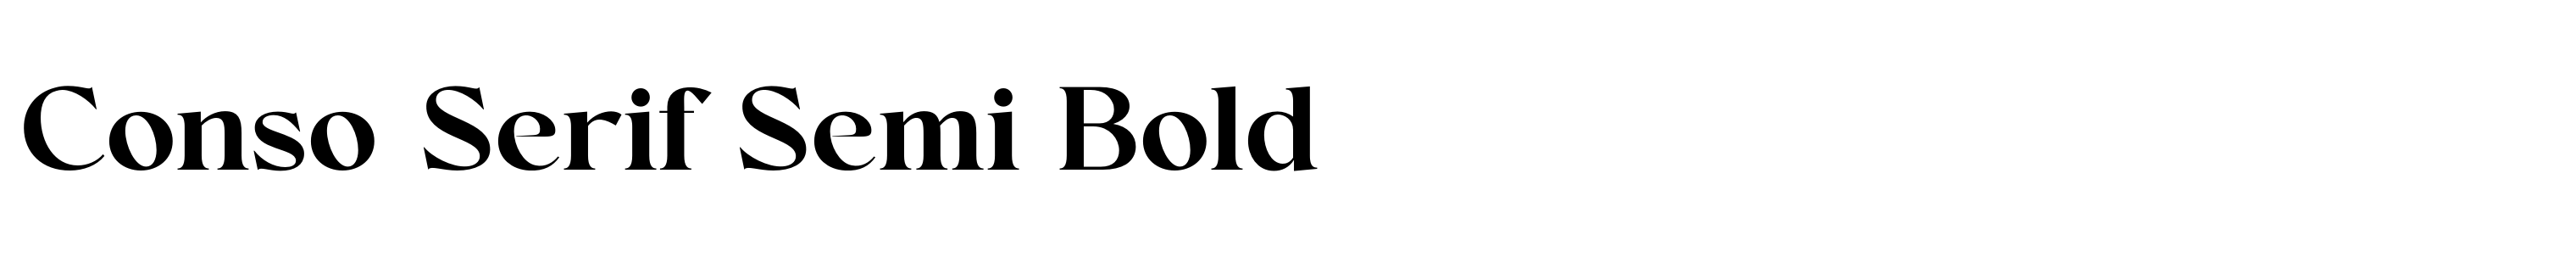 Conso Serif Semi Bold